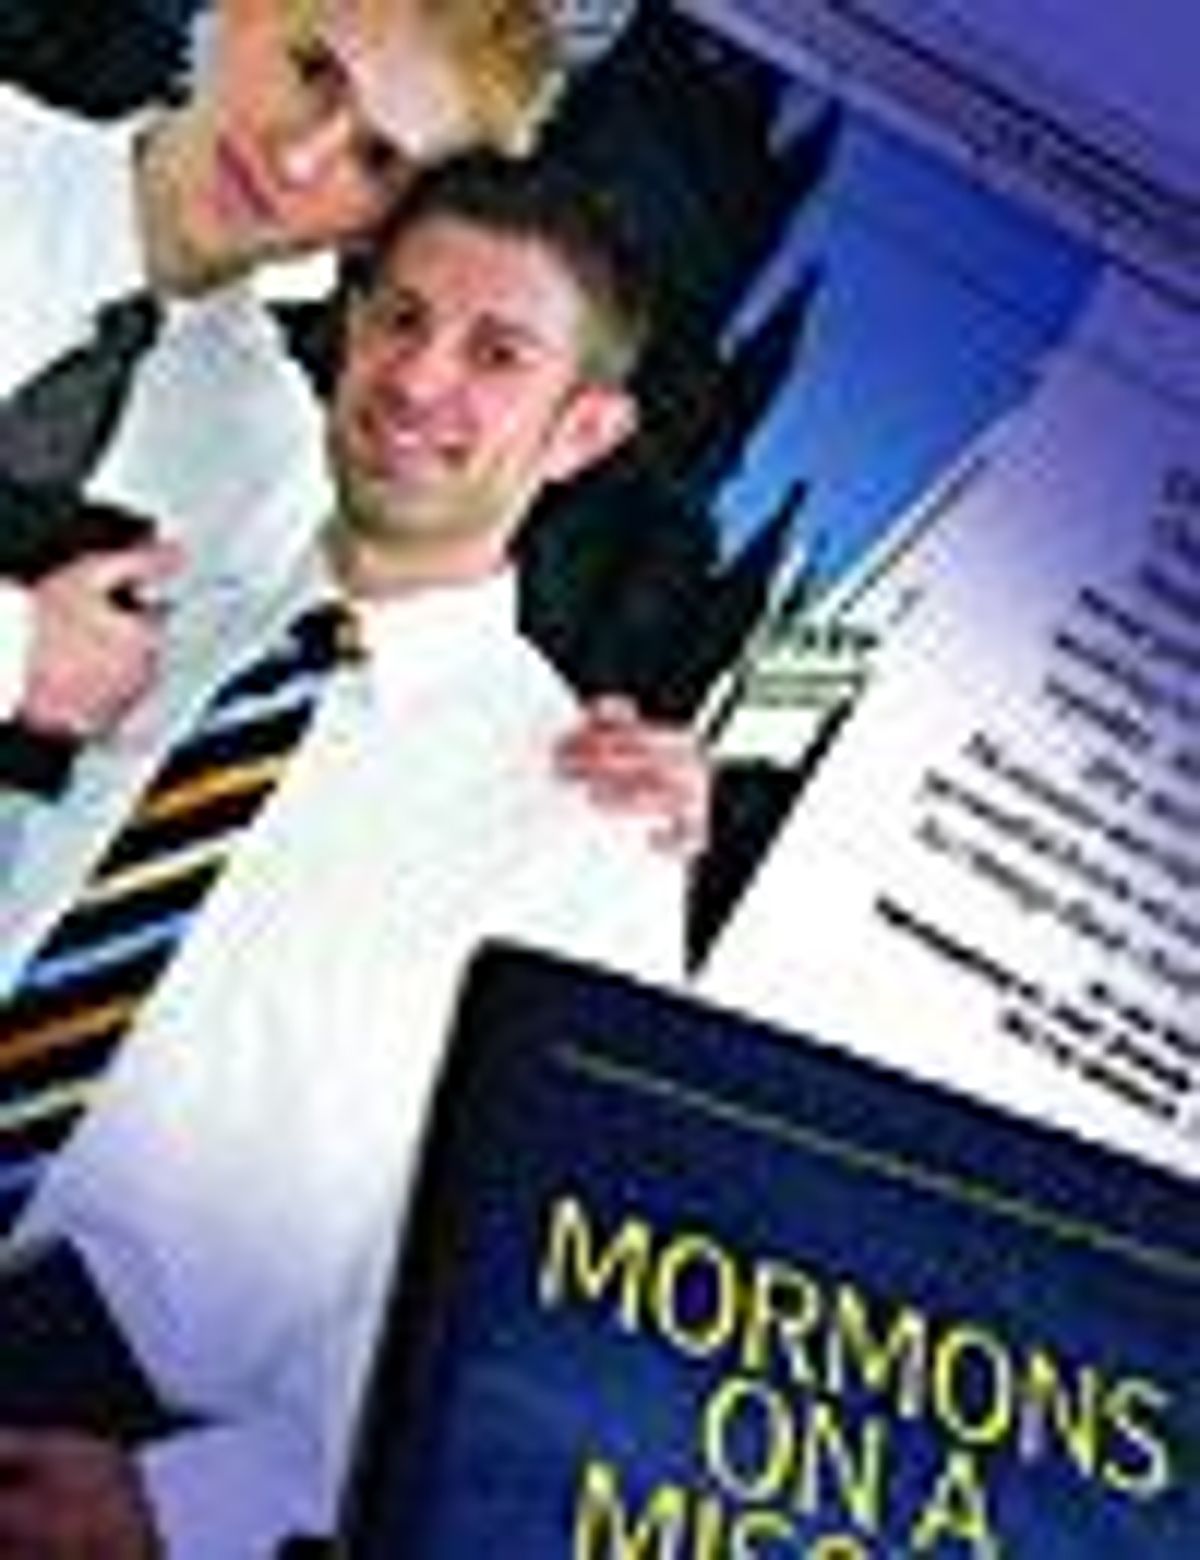 936_mormons